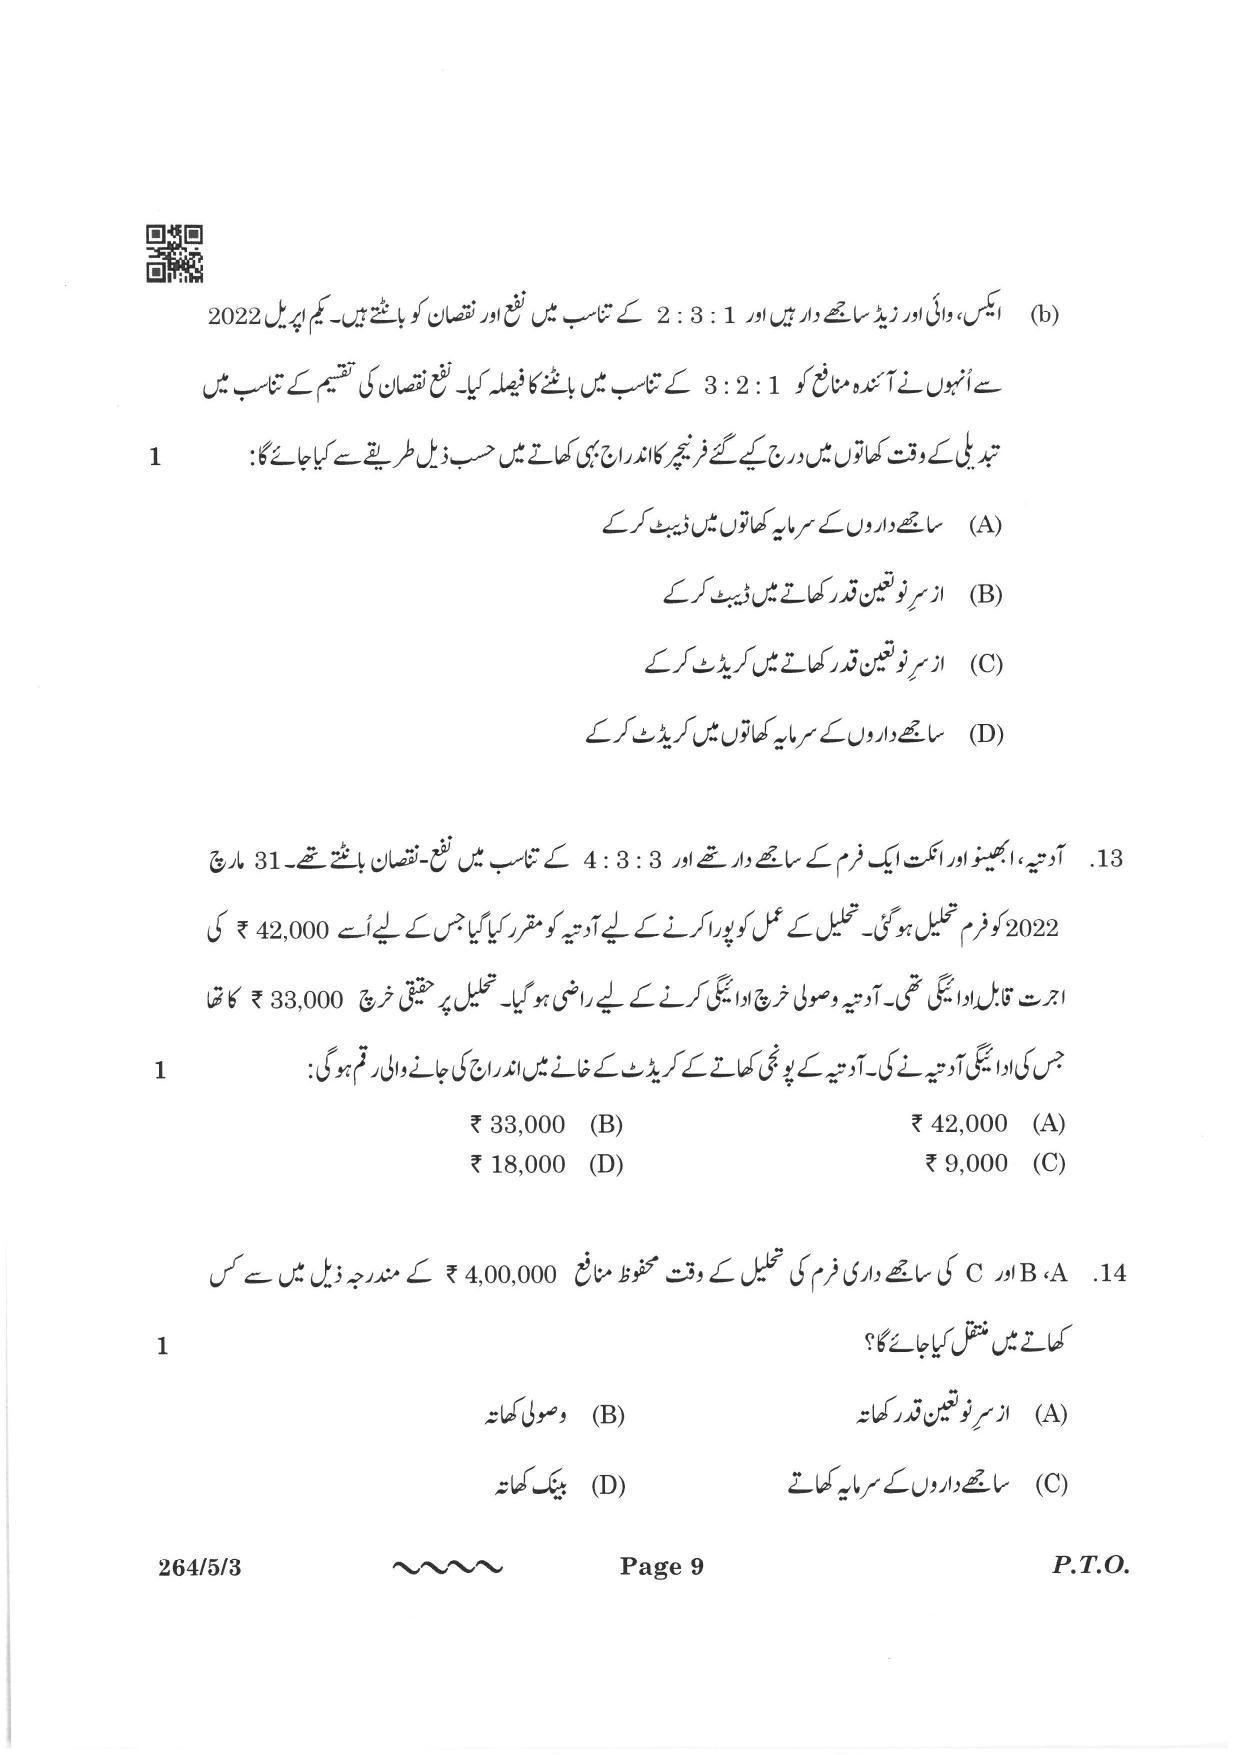 CBSE Class 12 264-5-3 Accountancy Urdu Version 2023 Question Paper - Page 9